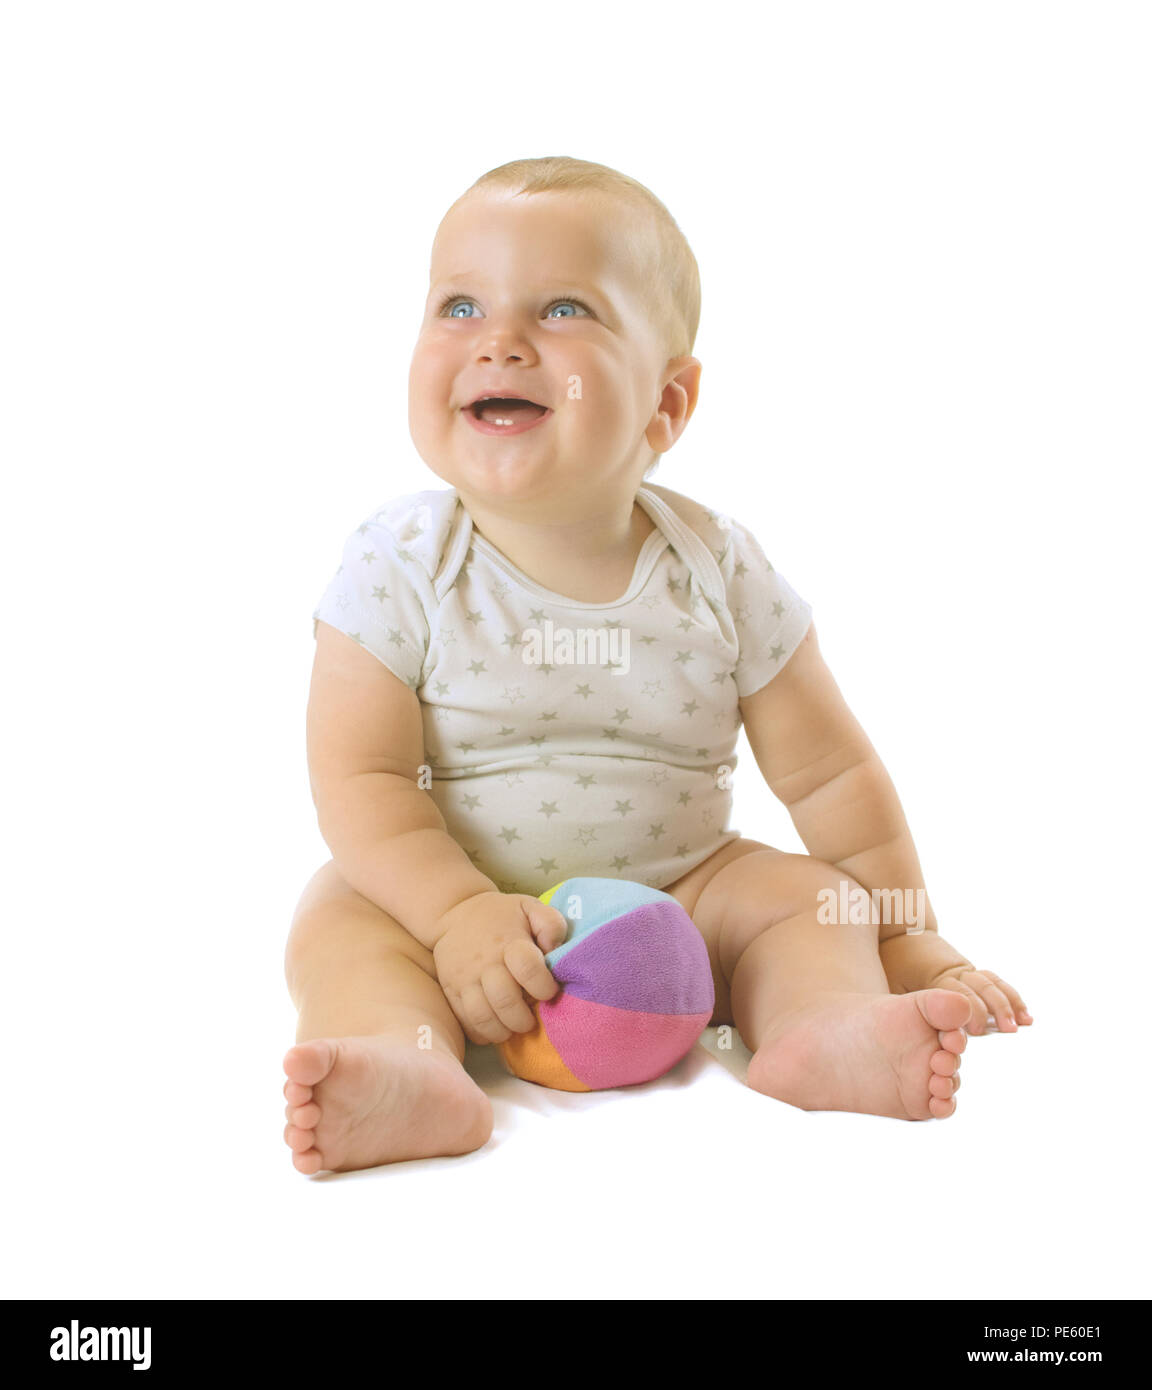 Adorable baby boy emplacement avec boule colorée entre ses jambes, regardant et riant. Isolé sur fond blanc. Banque D'Images